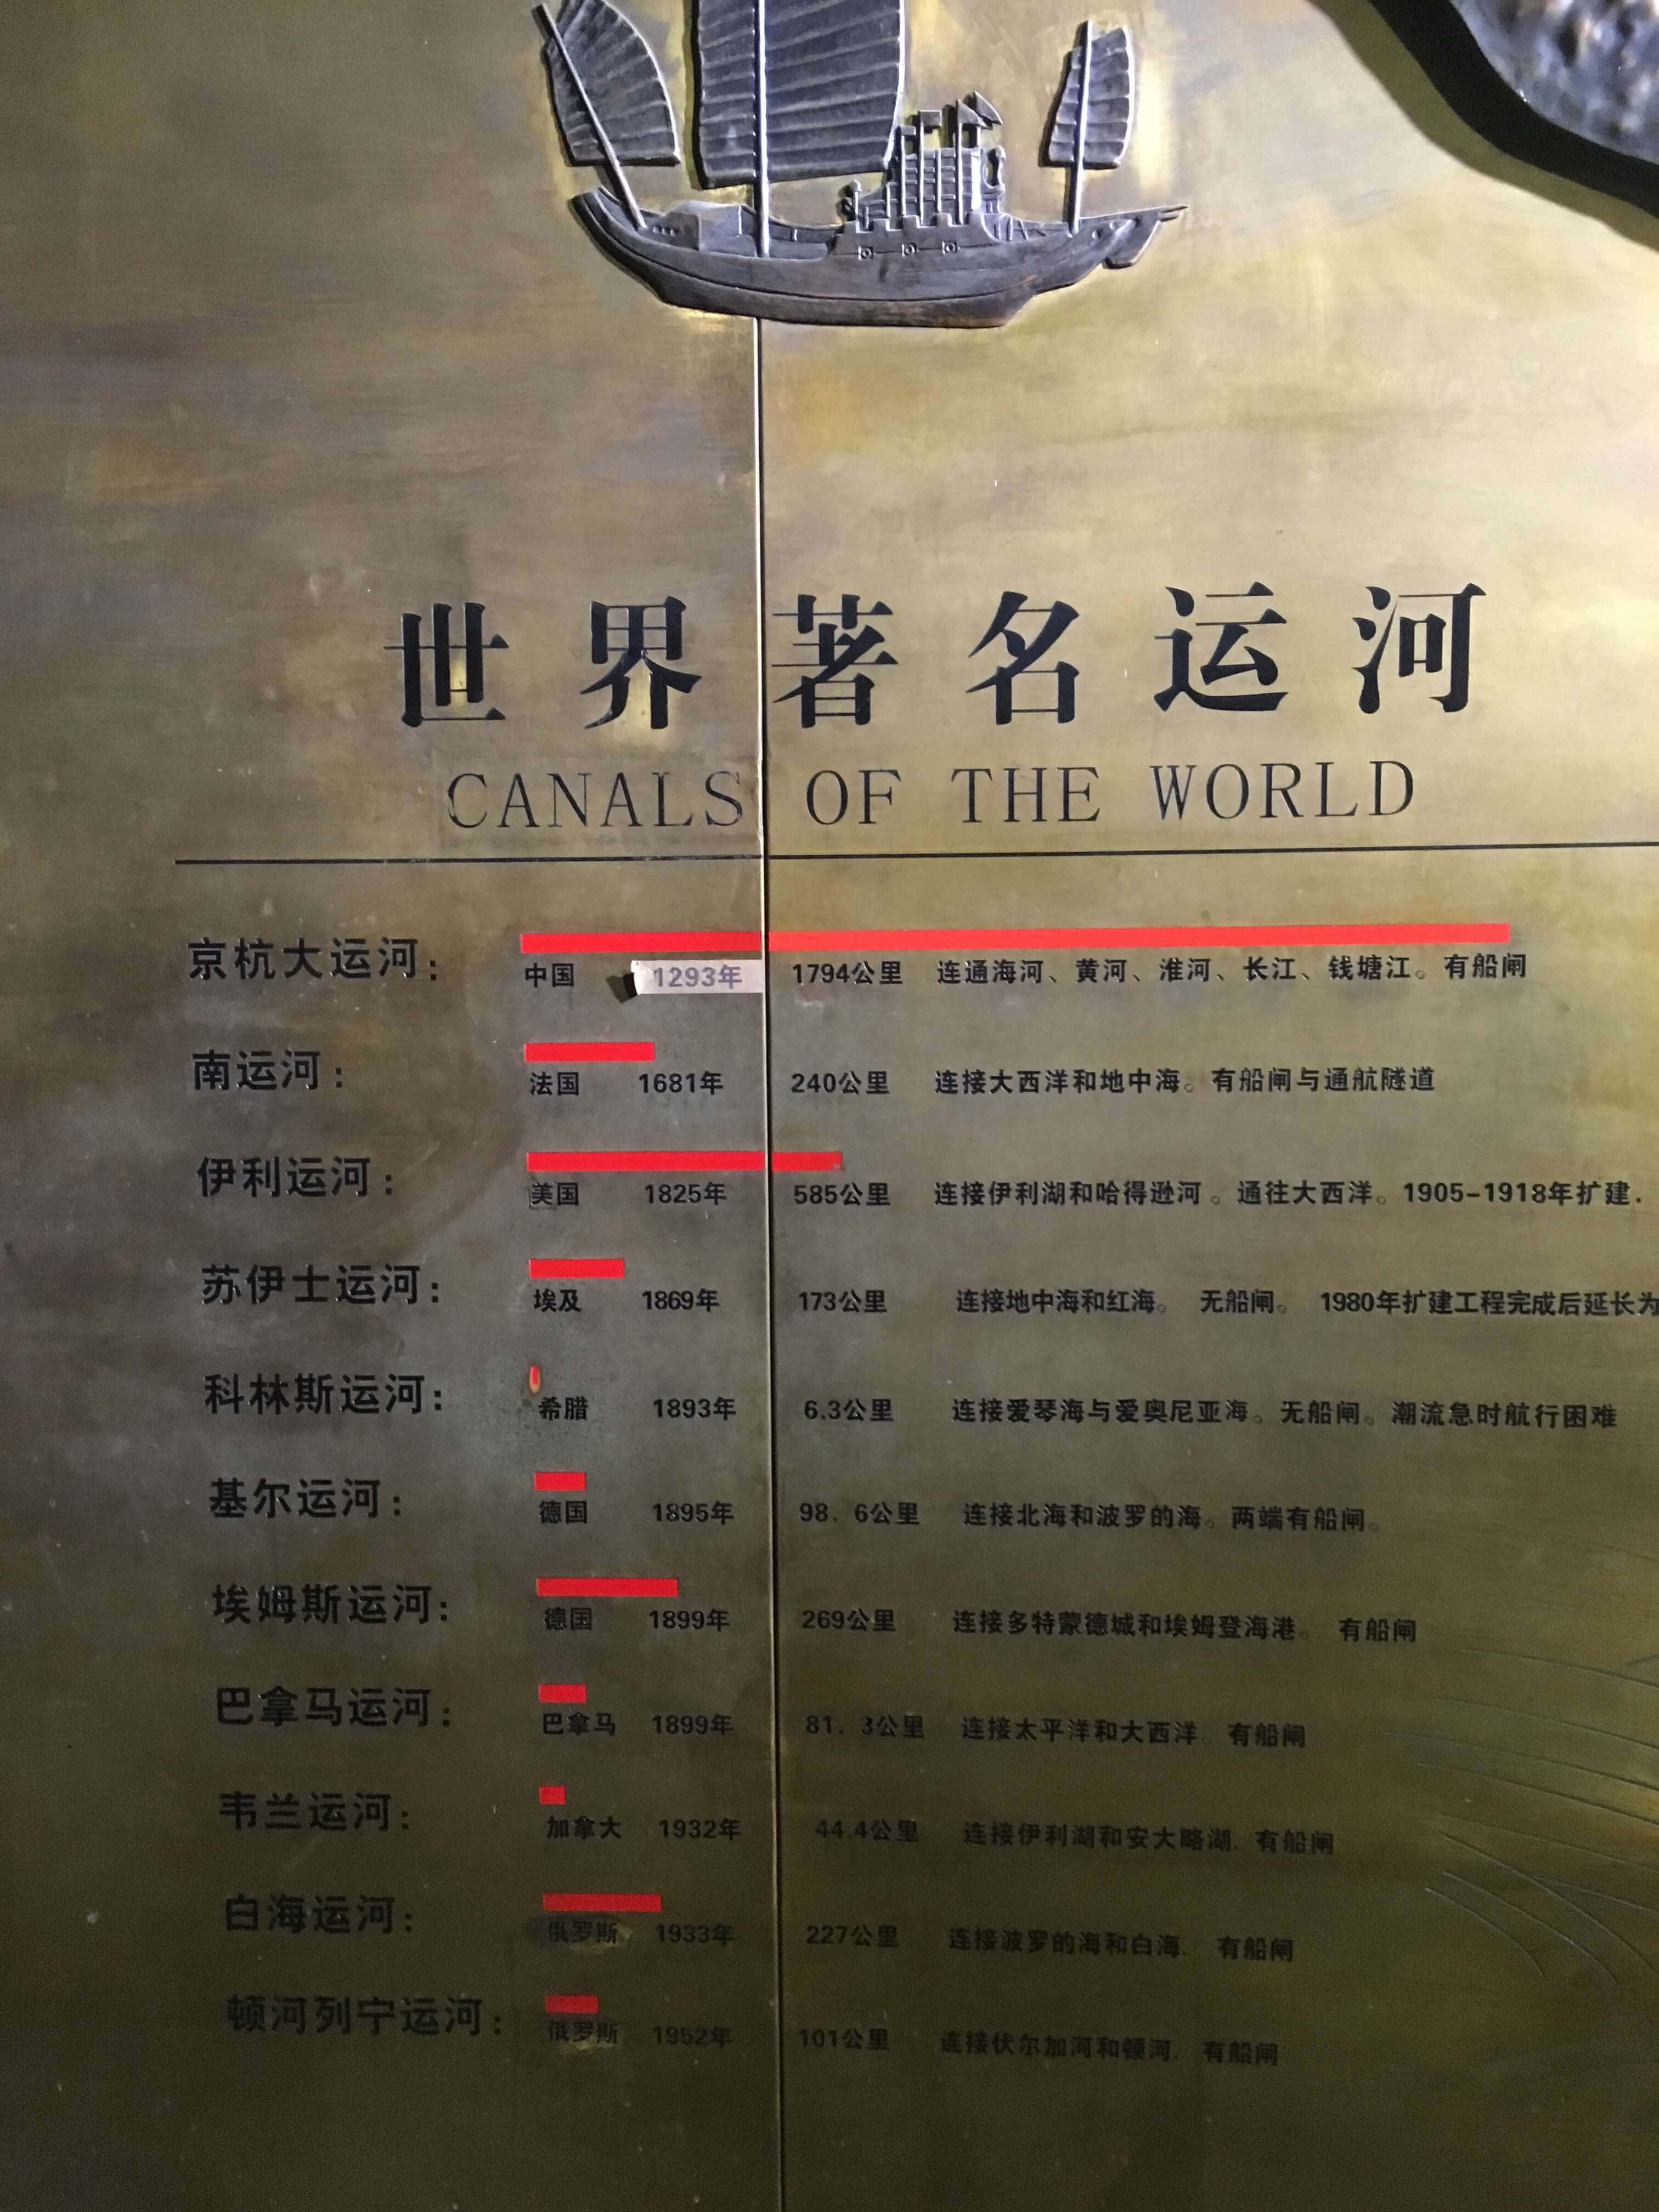 พิพิธภัณฑ์คลองต้าหยุนเหอแห่งหังโจว 杭州京杭大运河博物馆